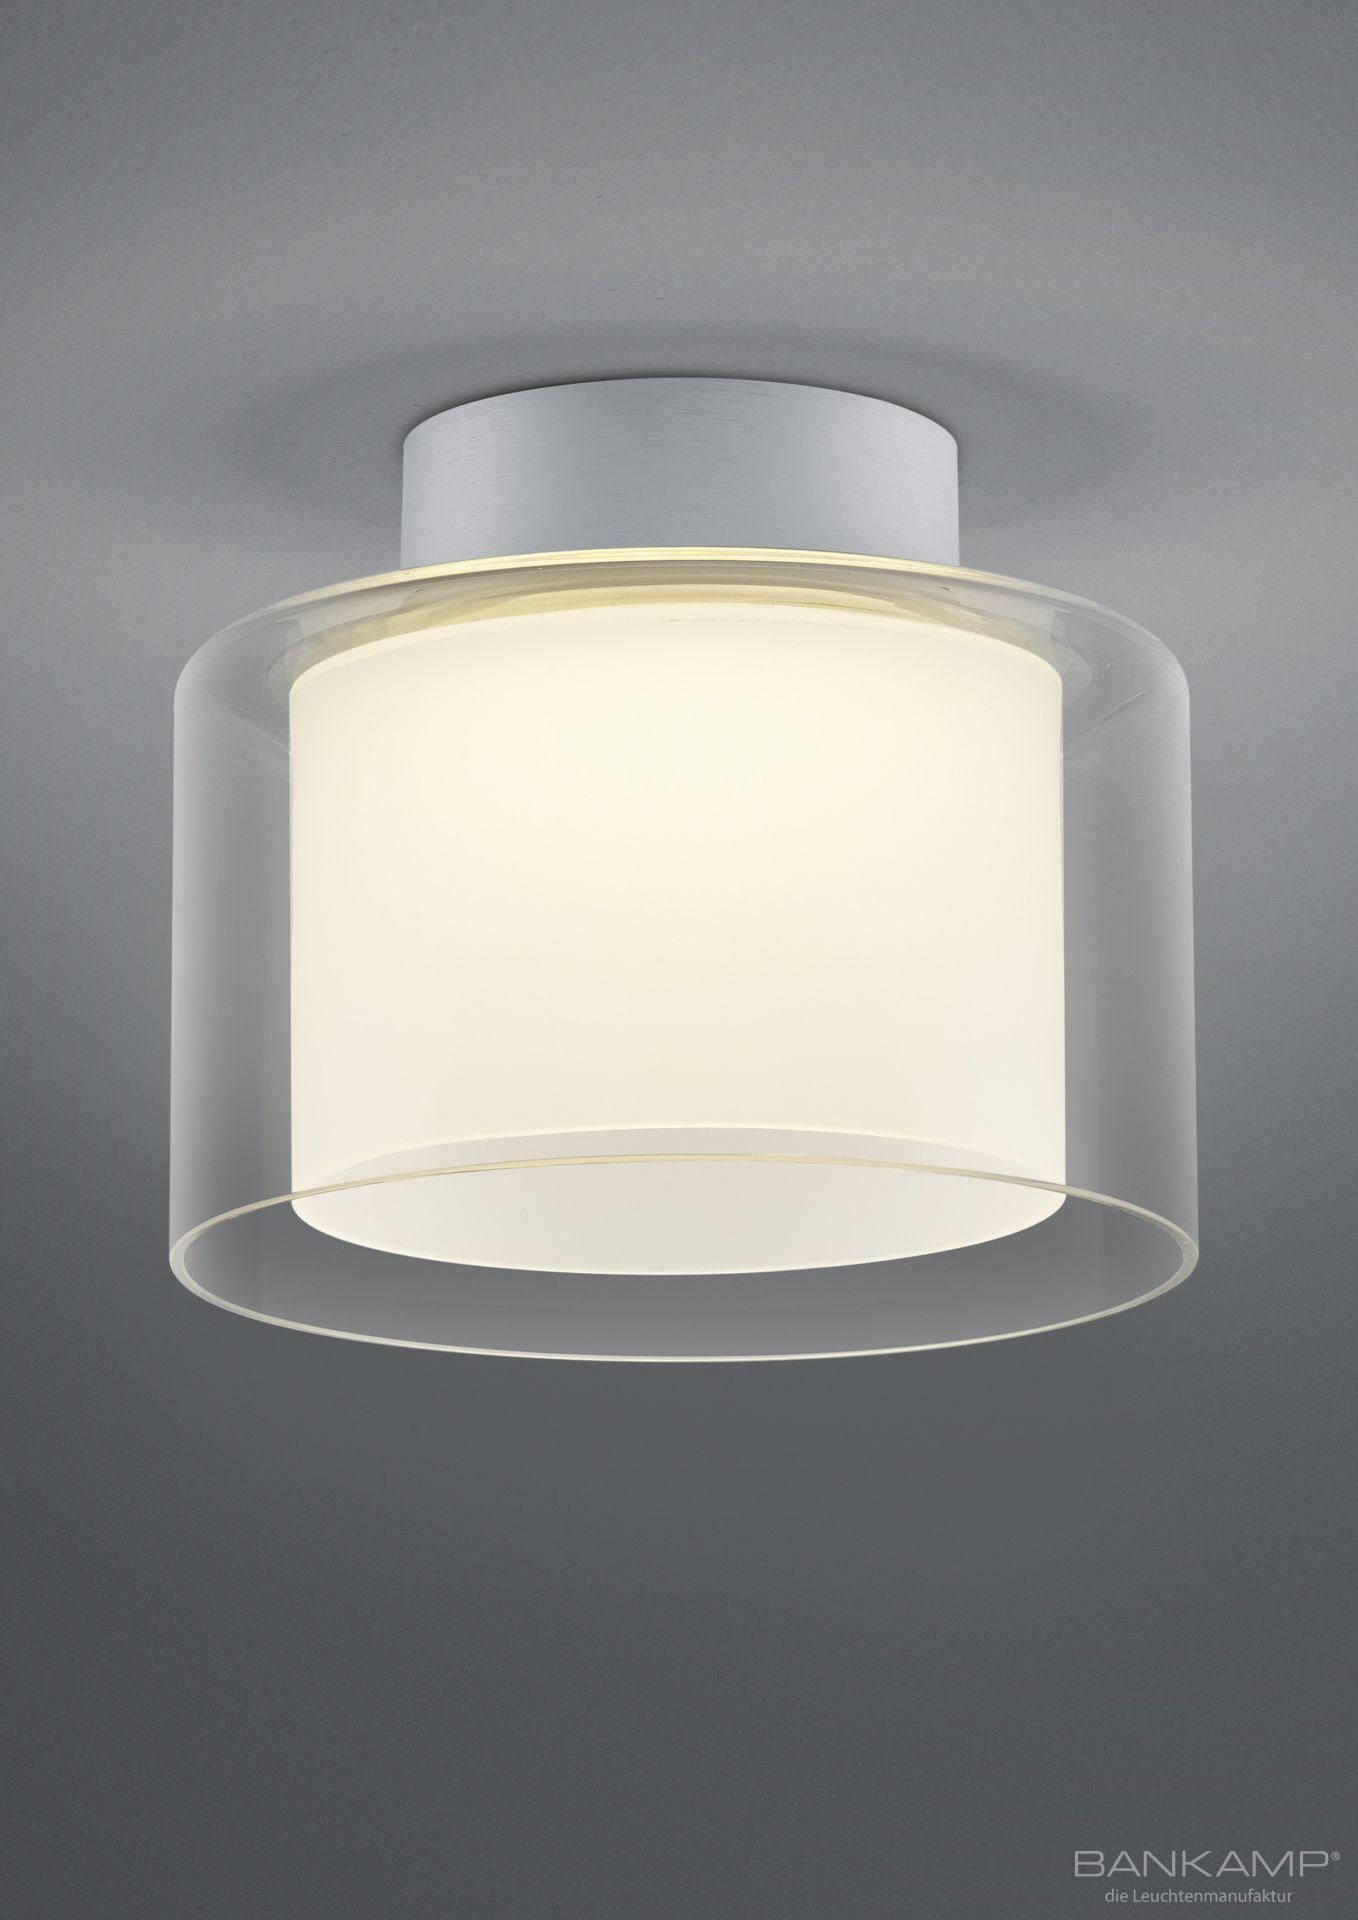 BANKAMP Leuchtenmanufaktur Klassische Deckenleuchten & Deckenlampen fürs Esszimmer von BANKAMP Leuchtenmanufaktur LED-Deckenleuchte Grand Clear 7770/1-36